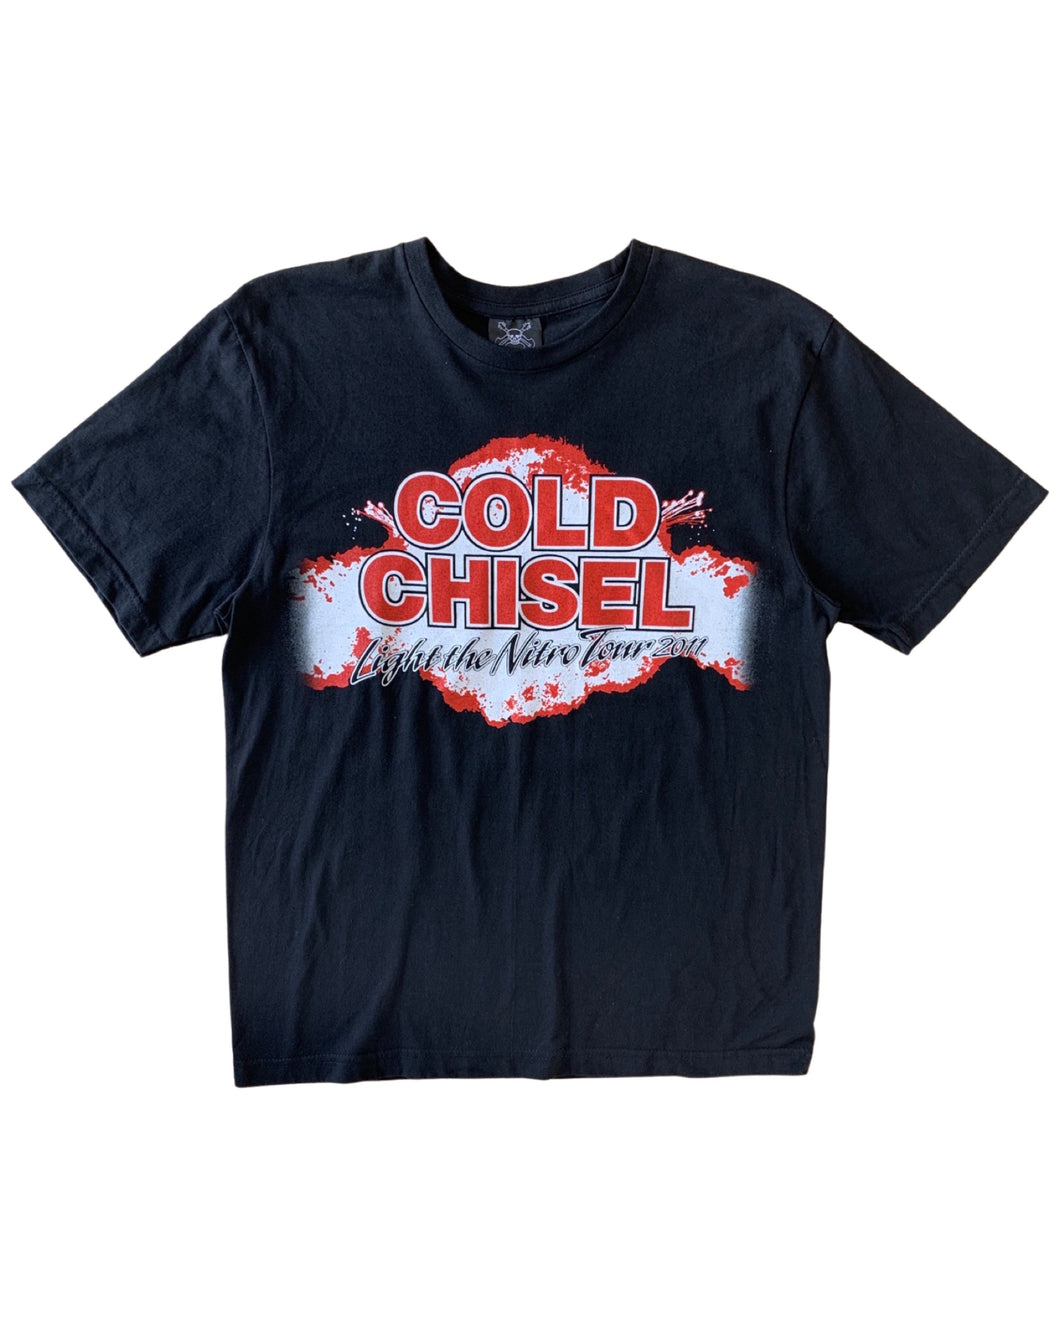 COLD CHISEL Size M Light the Nitro Tour 2011 Short Sleeve T-Shirt Black